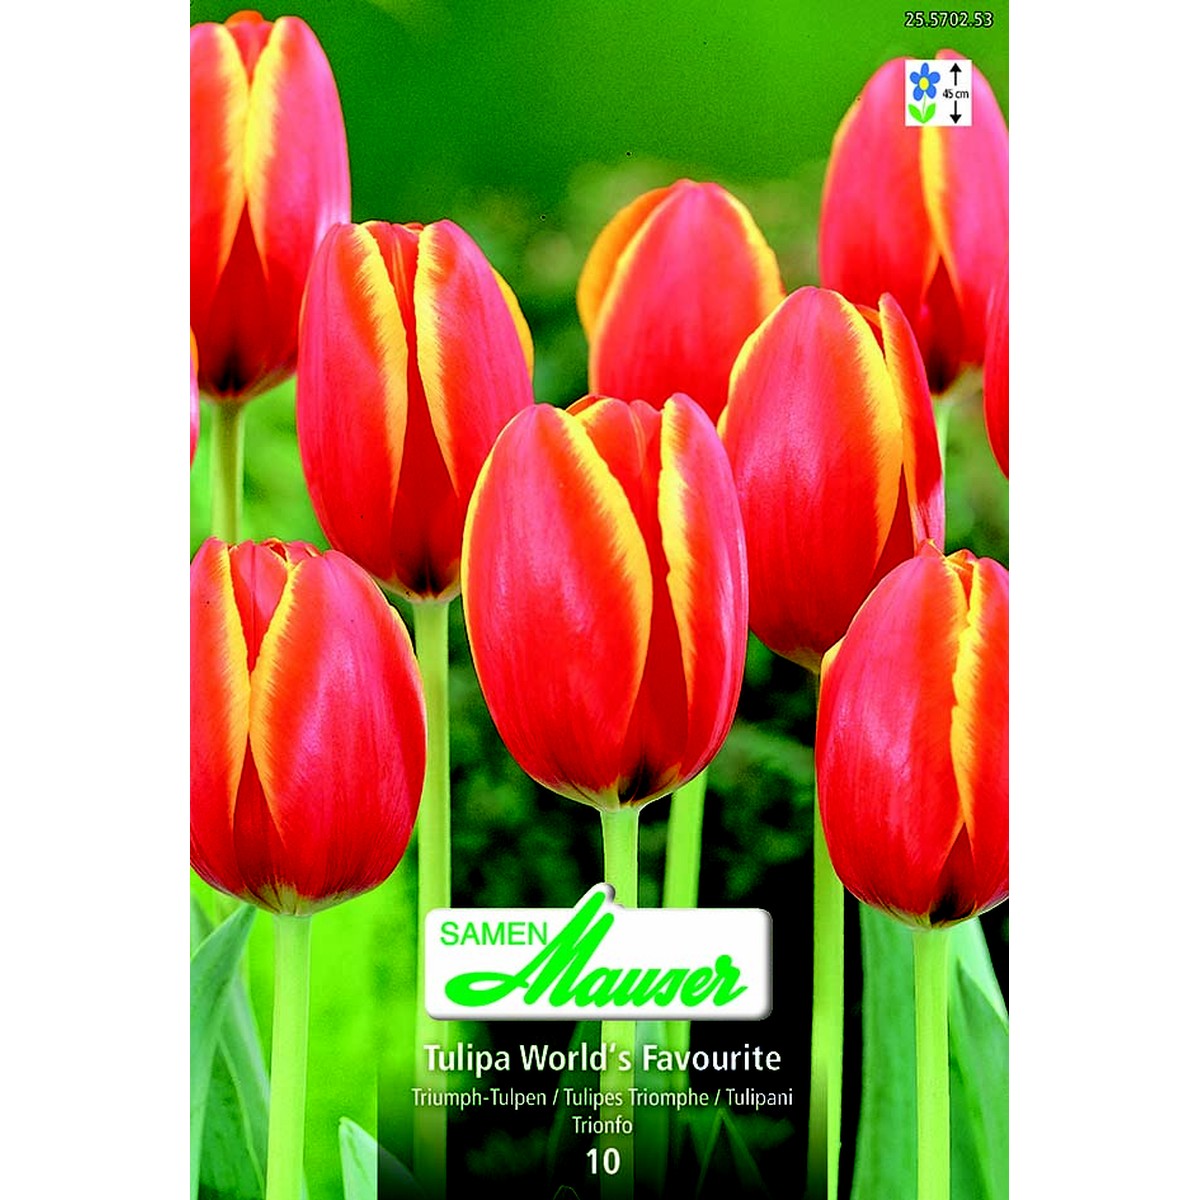   Tulipe TT Worlds's Favourite 10  12/